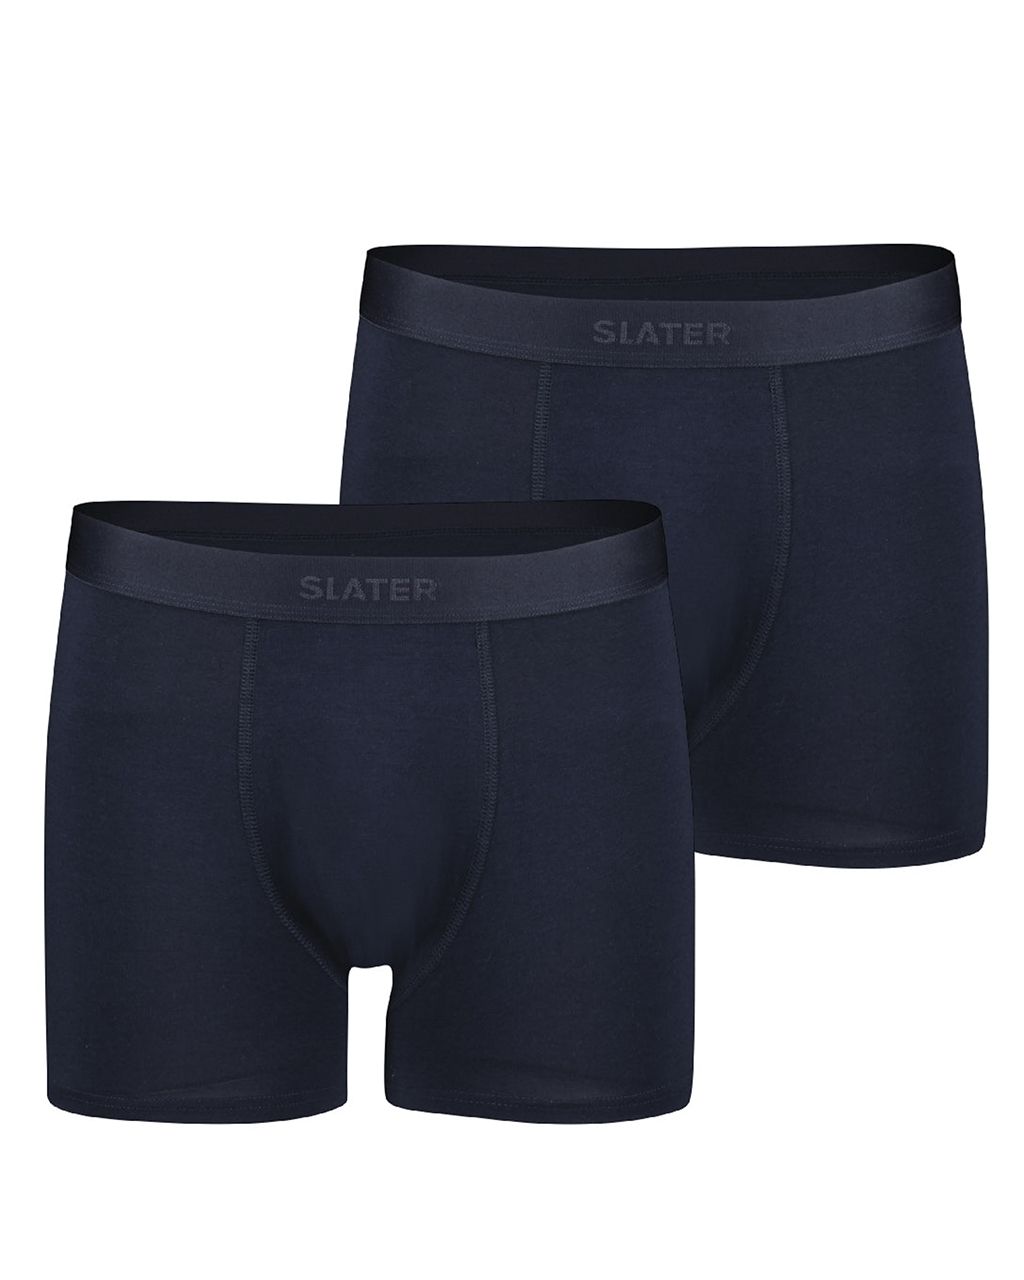 Slater Boxershort Donker blauw 078429-001-L